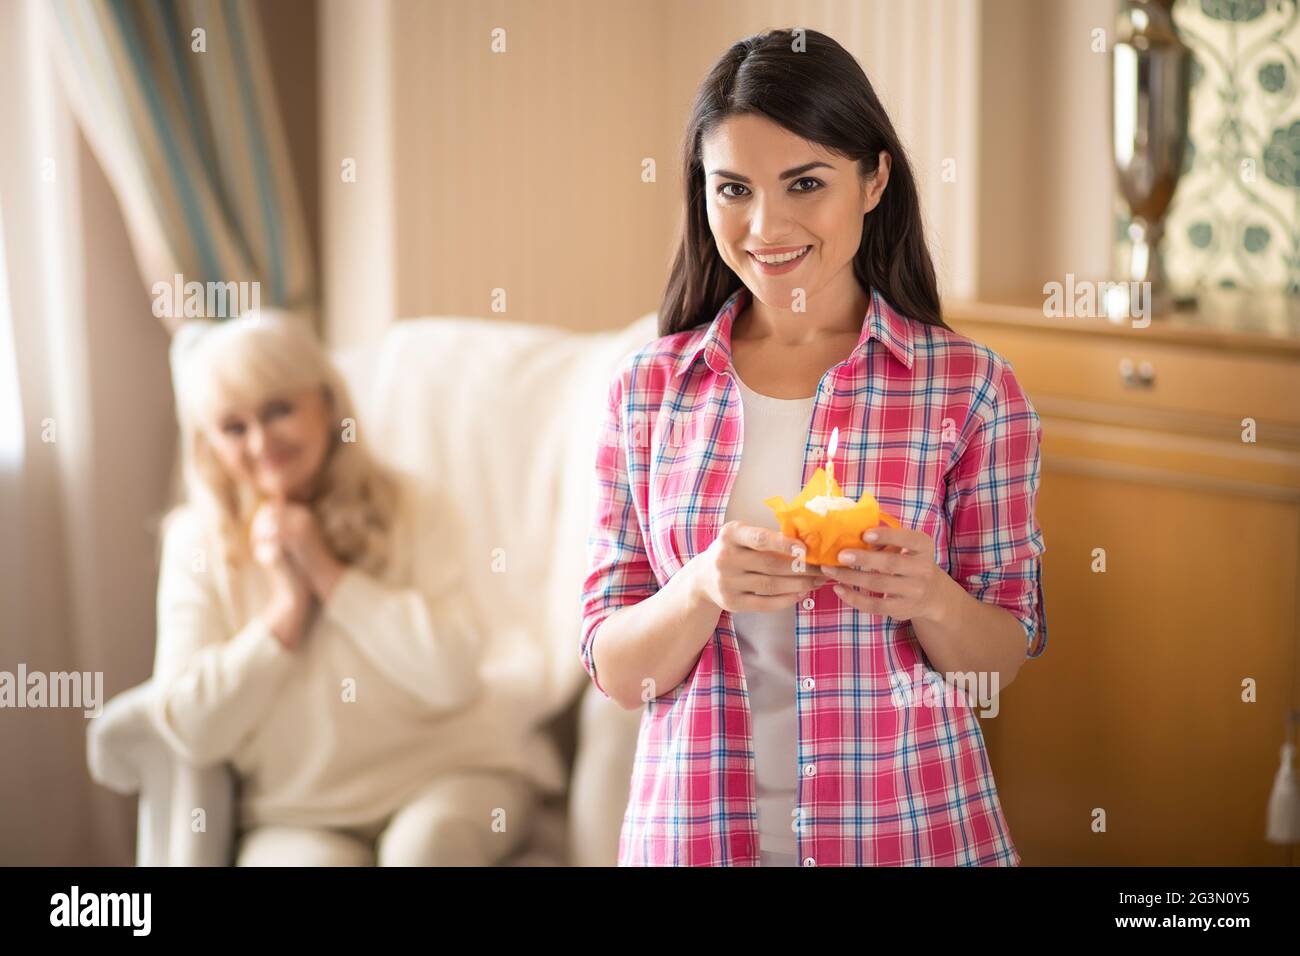 La figlia affascinante dà la piccola cupcake di compleanno con la candela alla sua madre più anziana Foto Stock